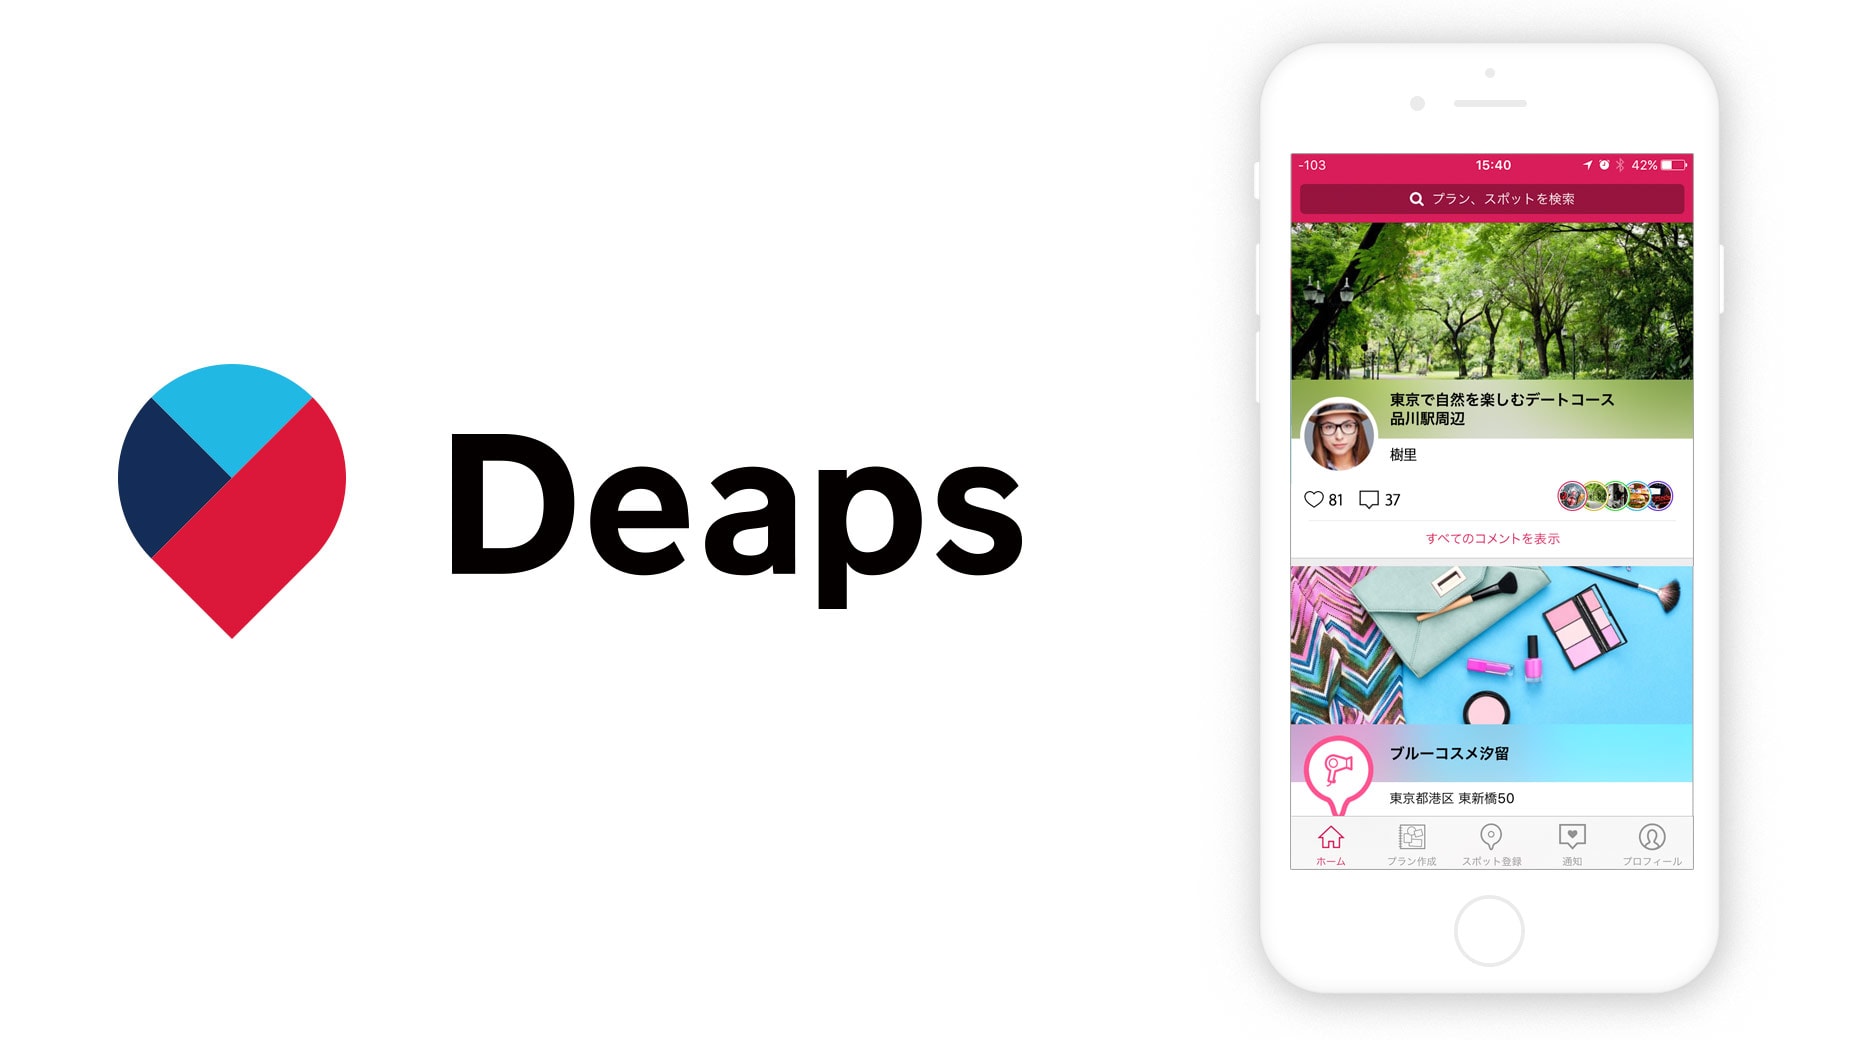 AIでつながるお出かけアプリサービス「Deaps(ディープス)」の提供について